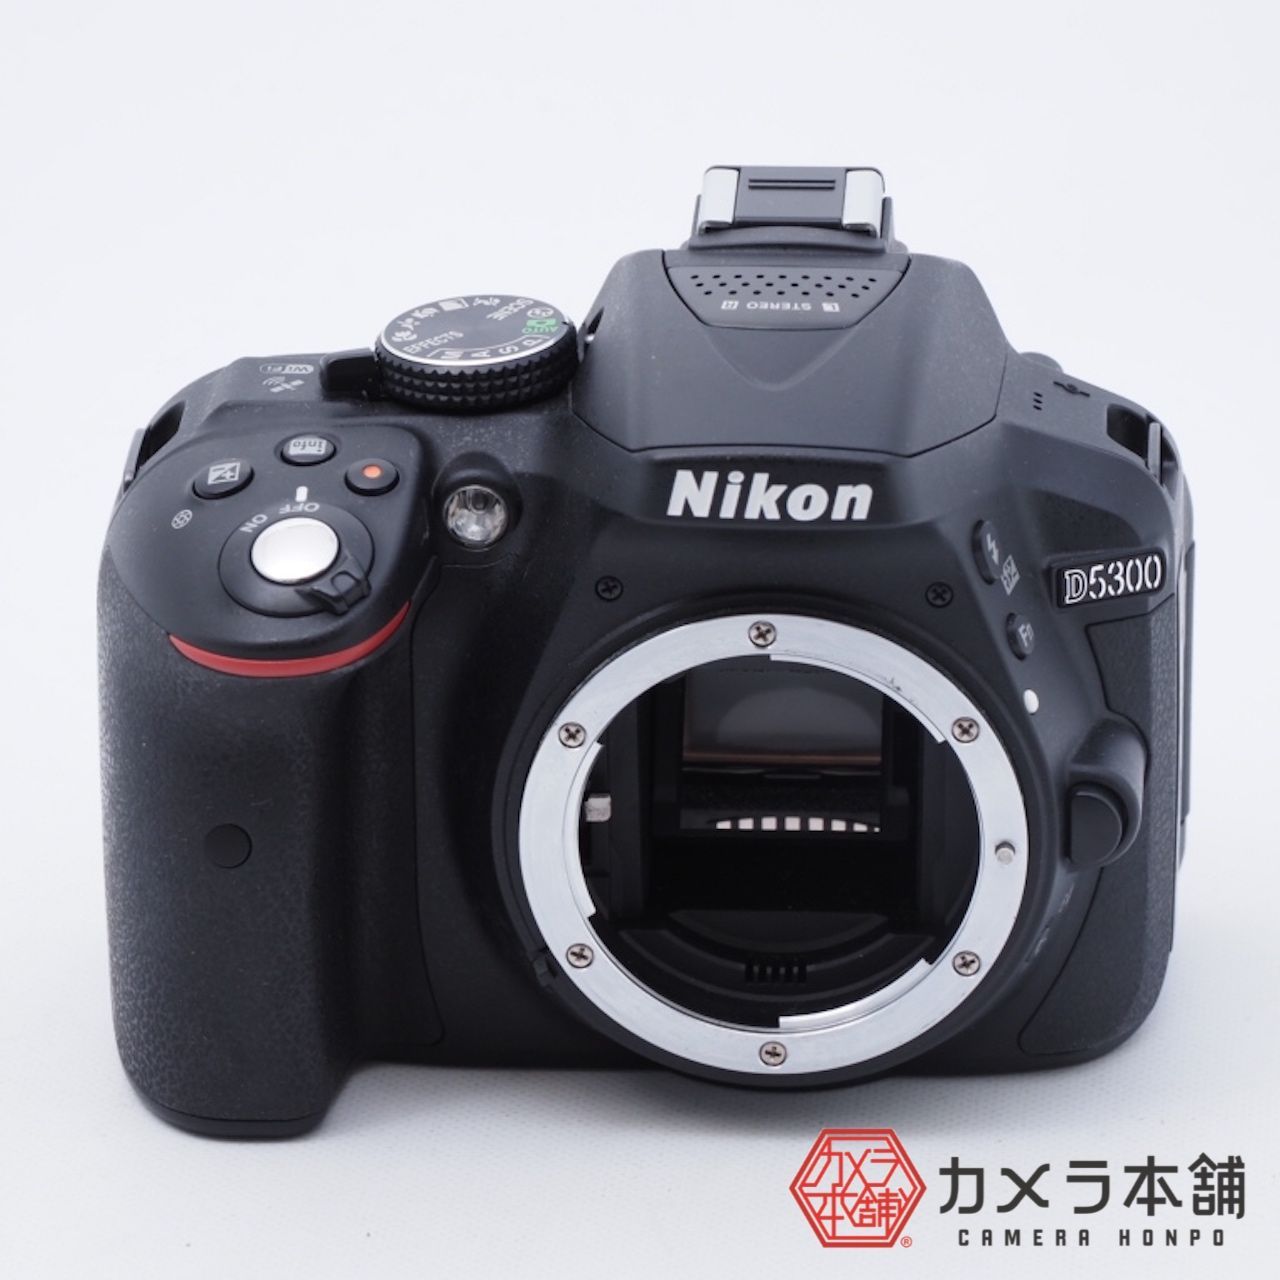 Nikon ニコン D5300 ブラック ボディ 2400万画素 3.2型液晶 カメラ本舗｜Camera honpo メルカリ